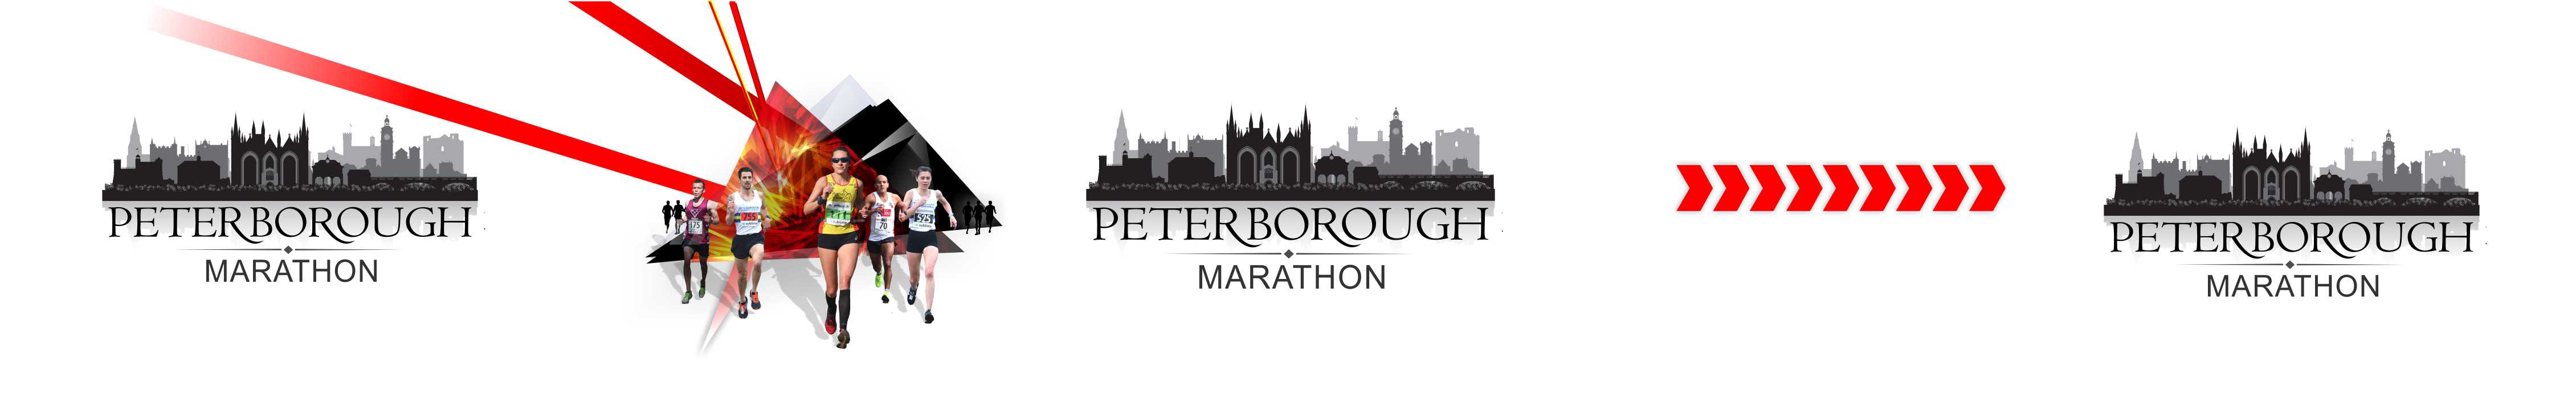 Enervit Peterborough Marathon